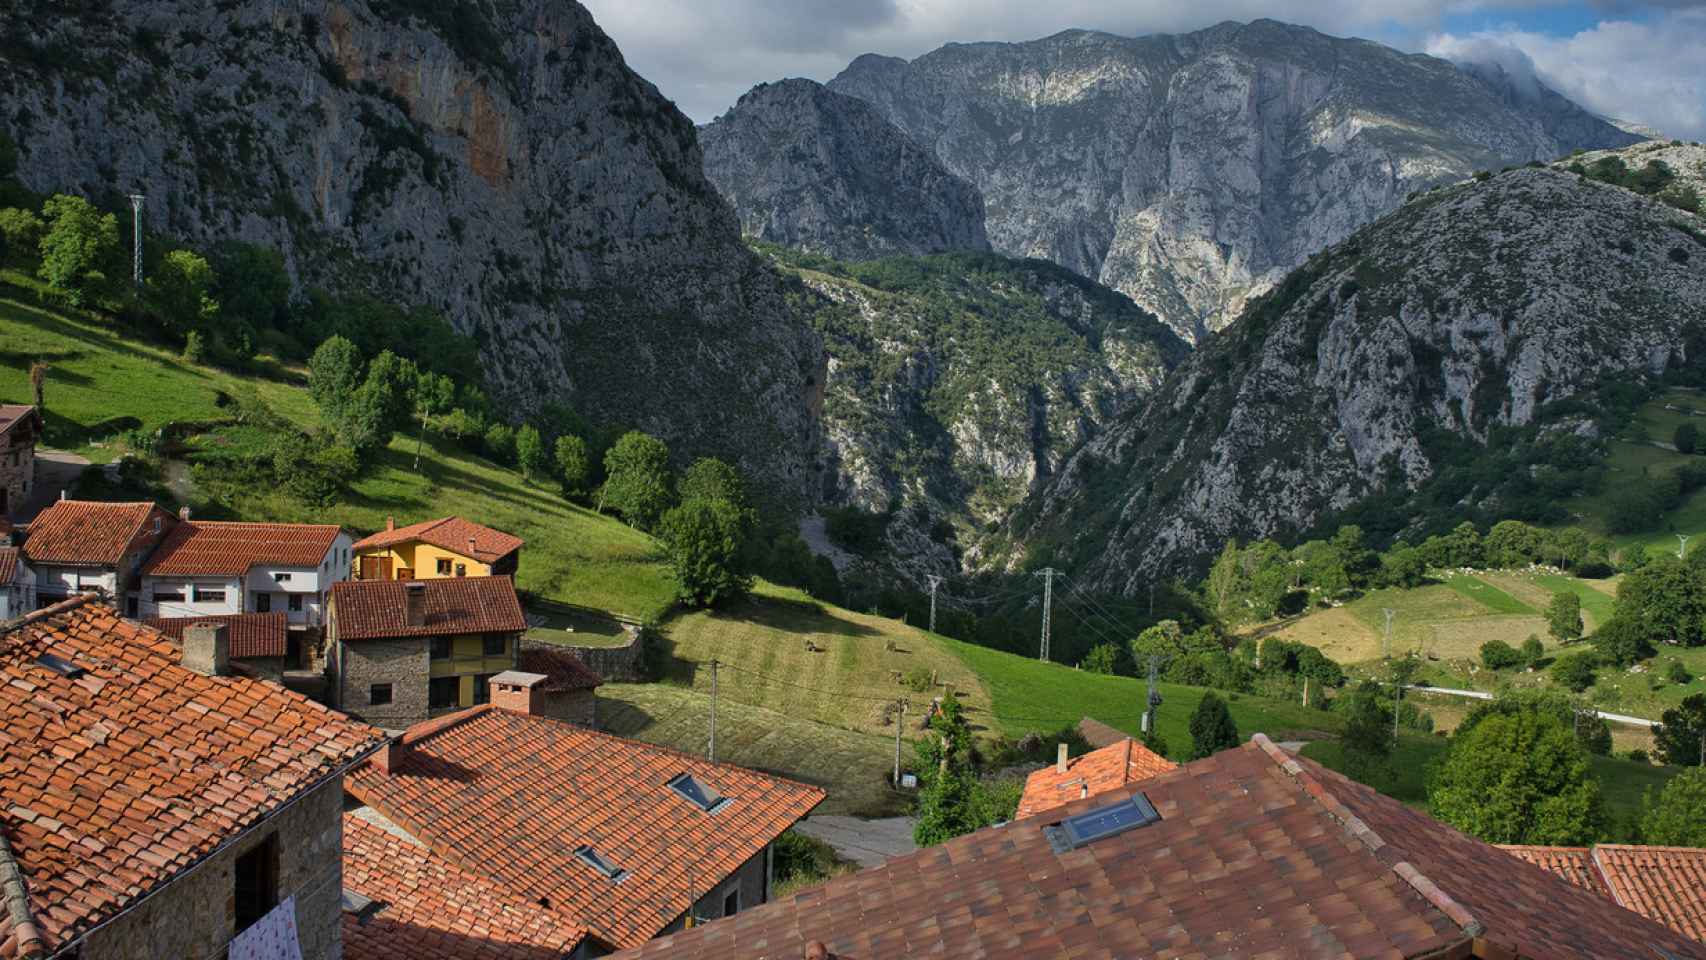 este pueblo cántabro situado entre montañas fabrica el queso más famoso del mundo